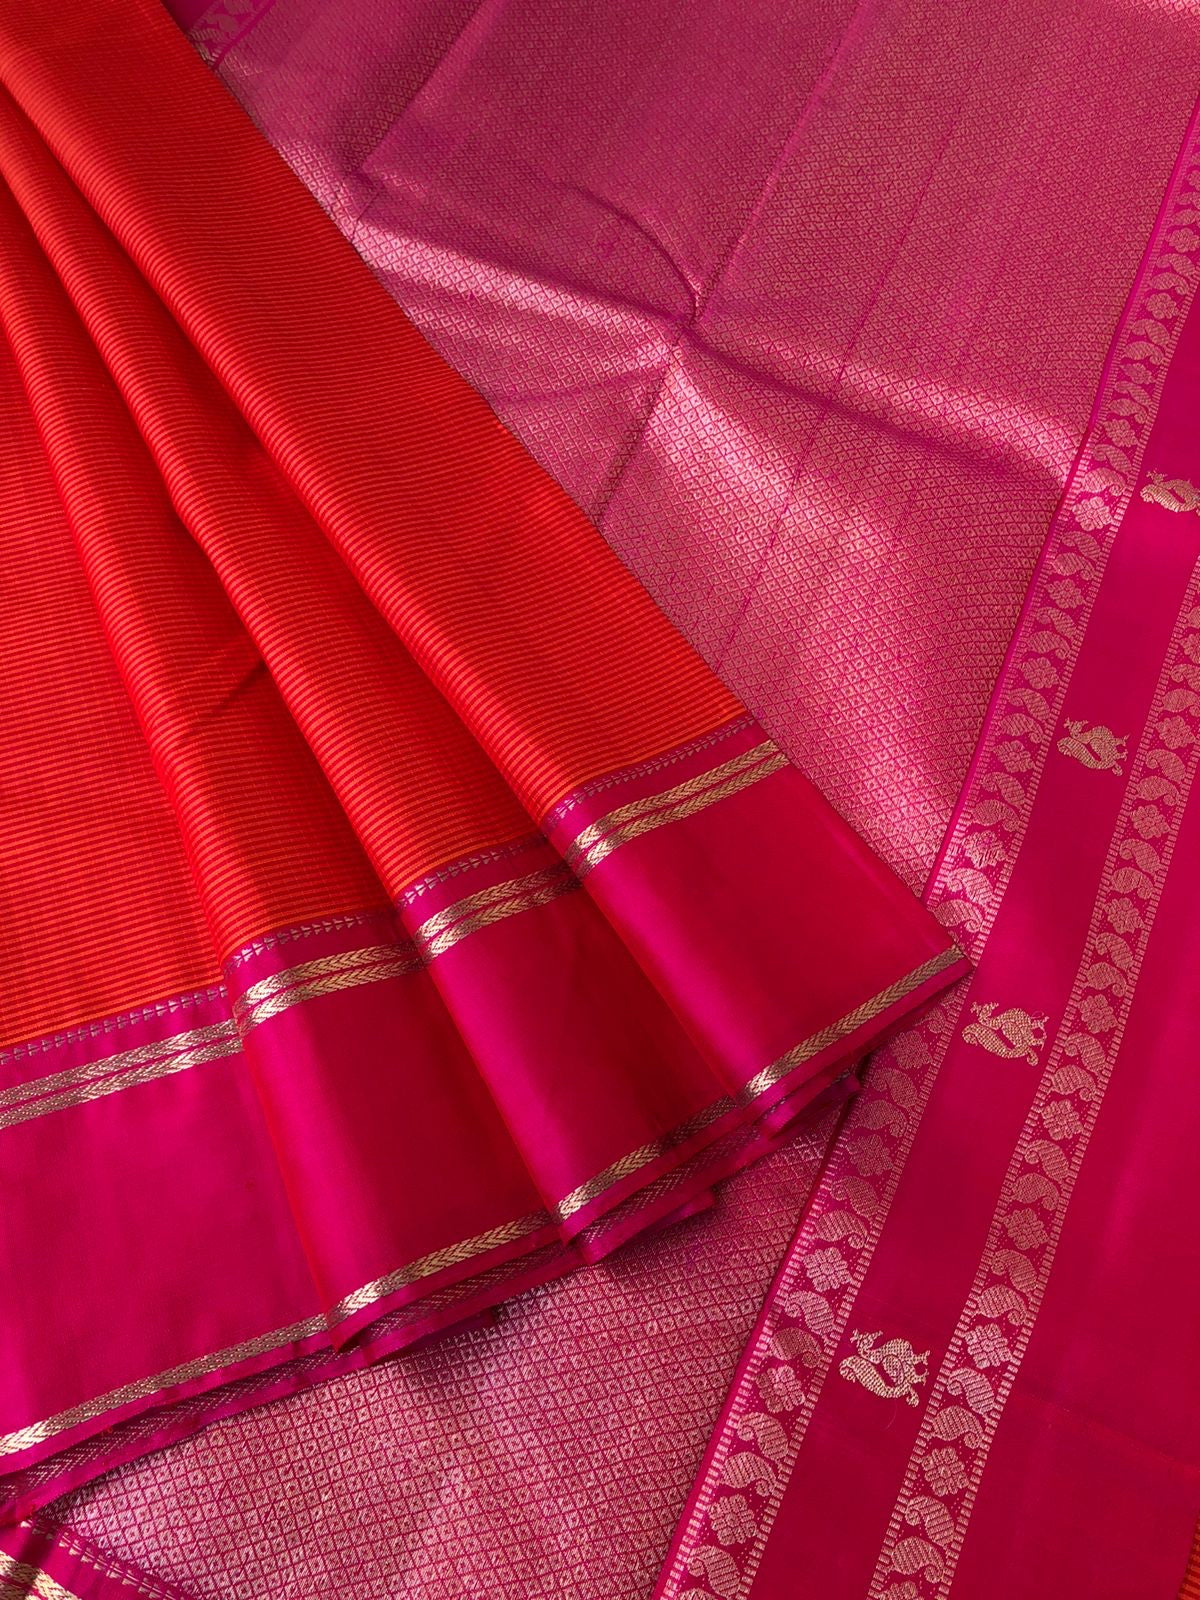 Kattams on Kanchivarams - Kasa kasa kattam - the most beautiful chettinad style orange and pink kasa kasa kattam the best part is 1000 buttas woven blouse